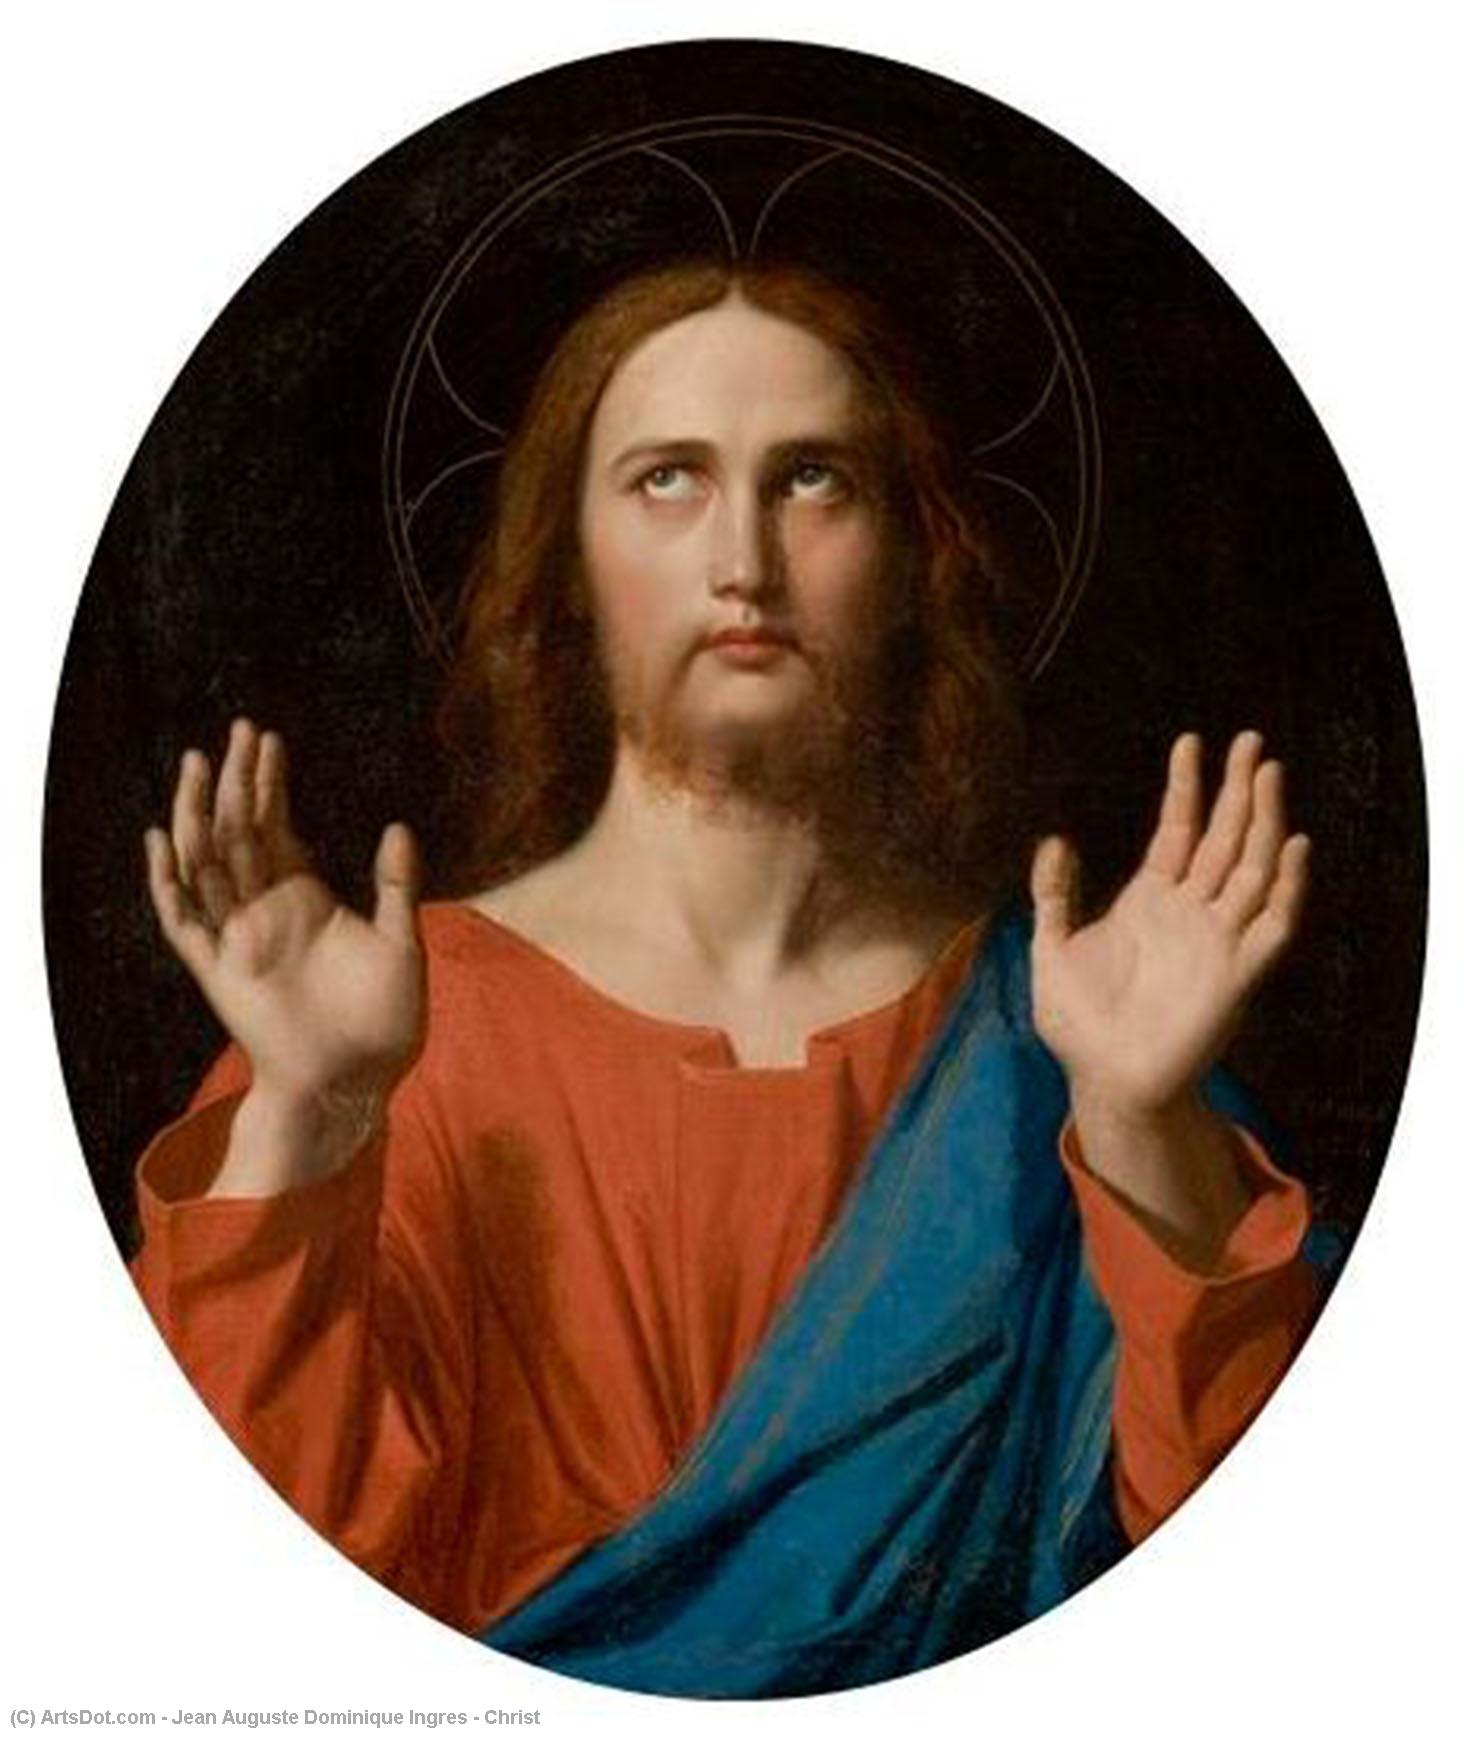 WikiOO.org - אנציקלופדיה לאמנויות יפות - ציור, יצירות אמנות Jean Auguste Dominique Ingres - Christ